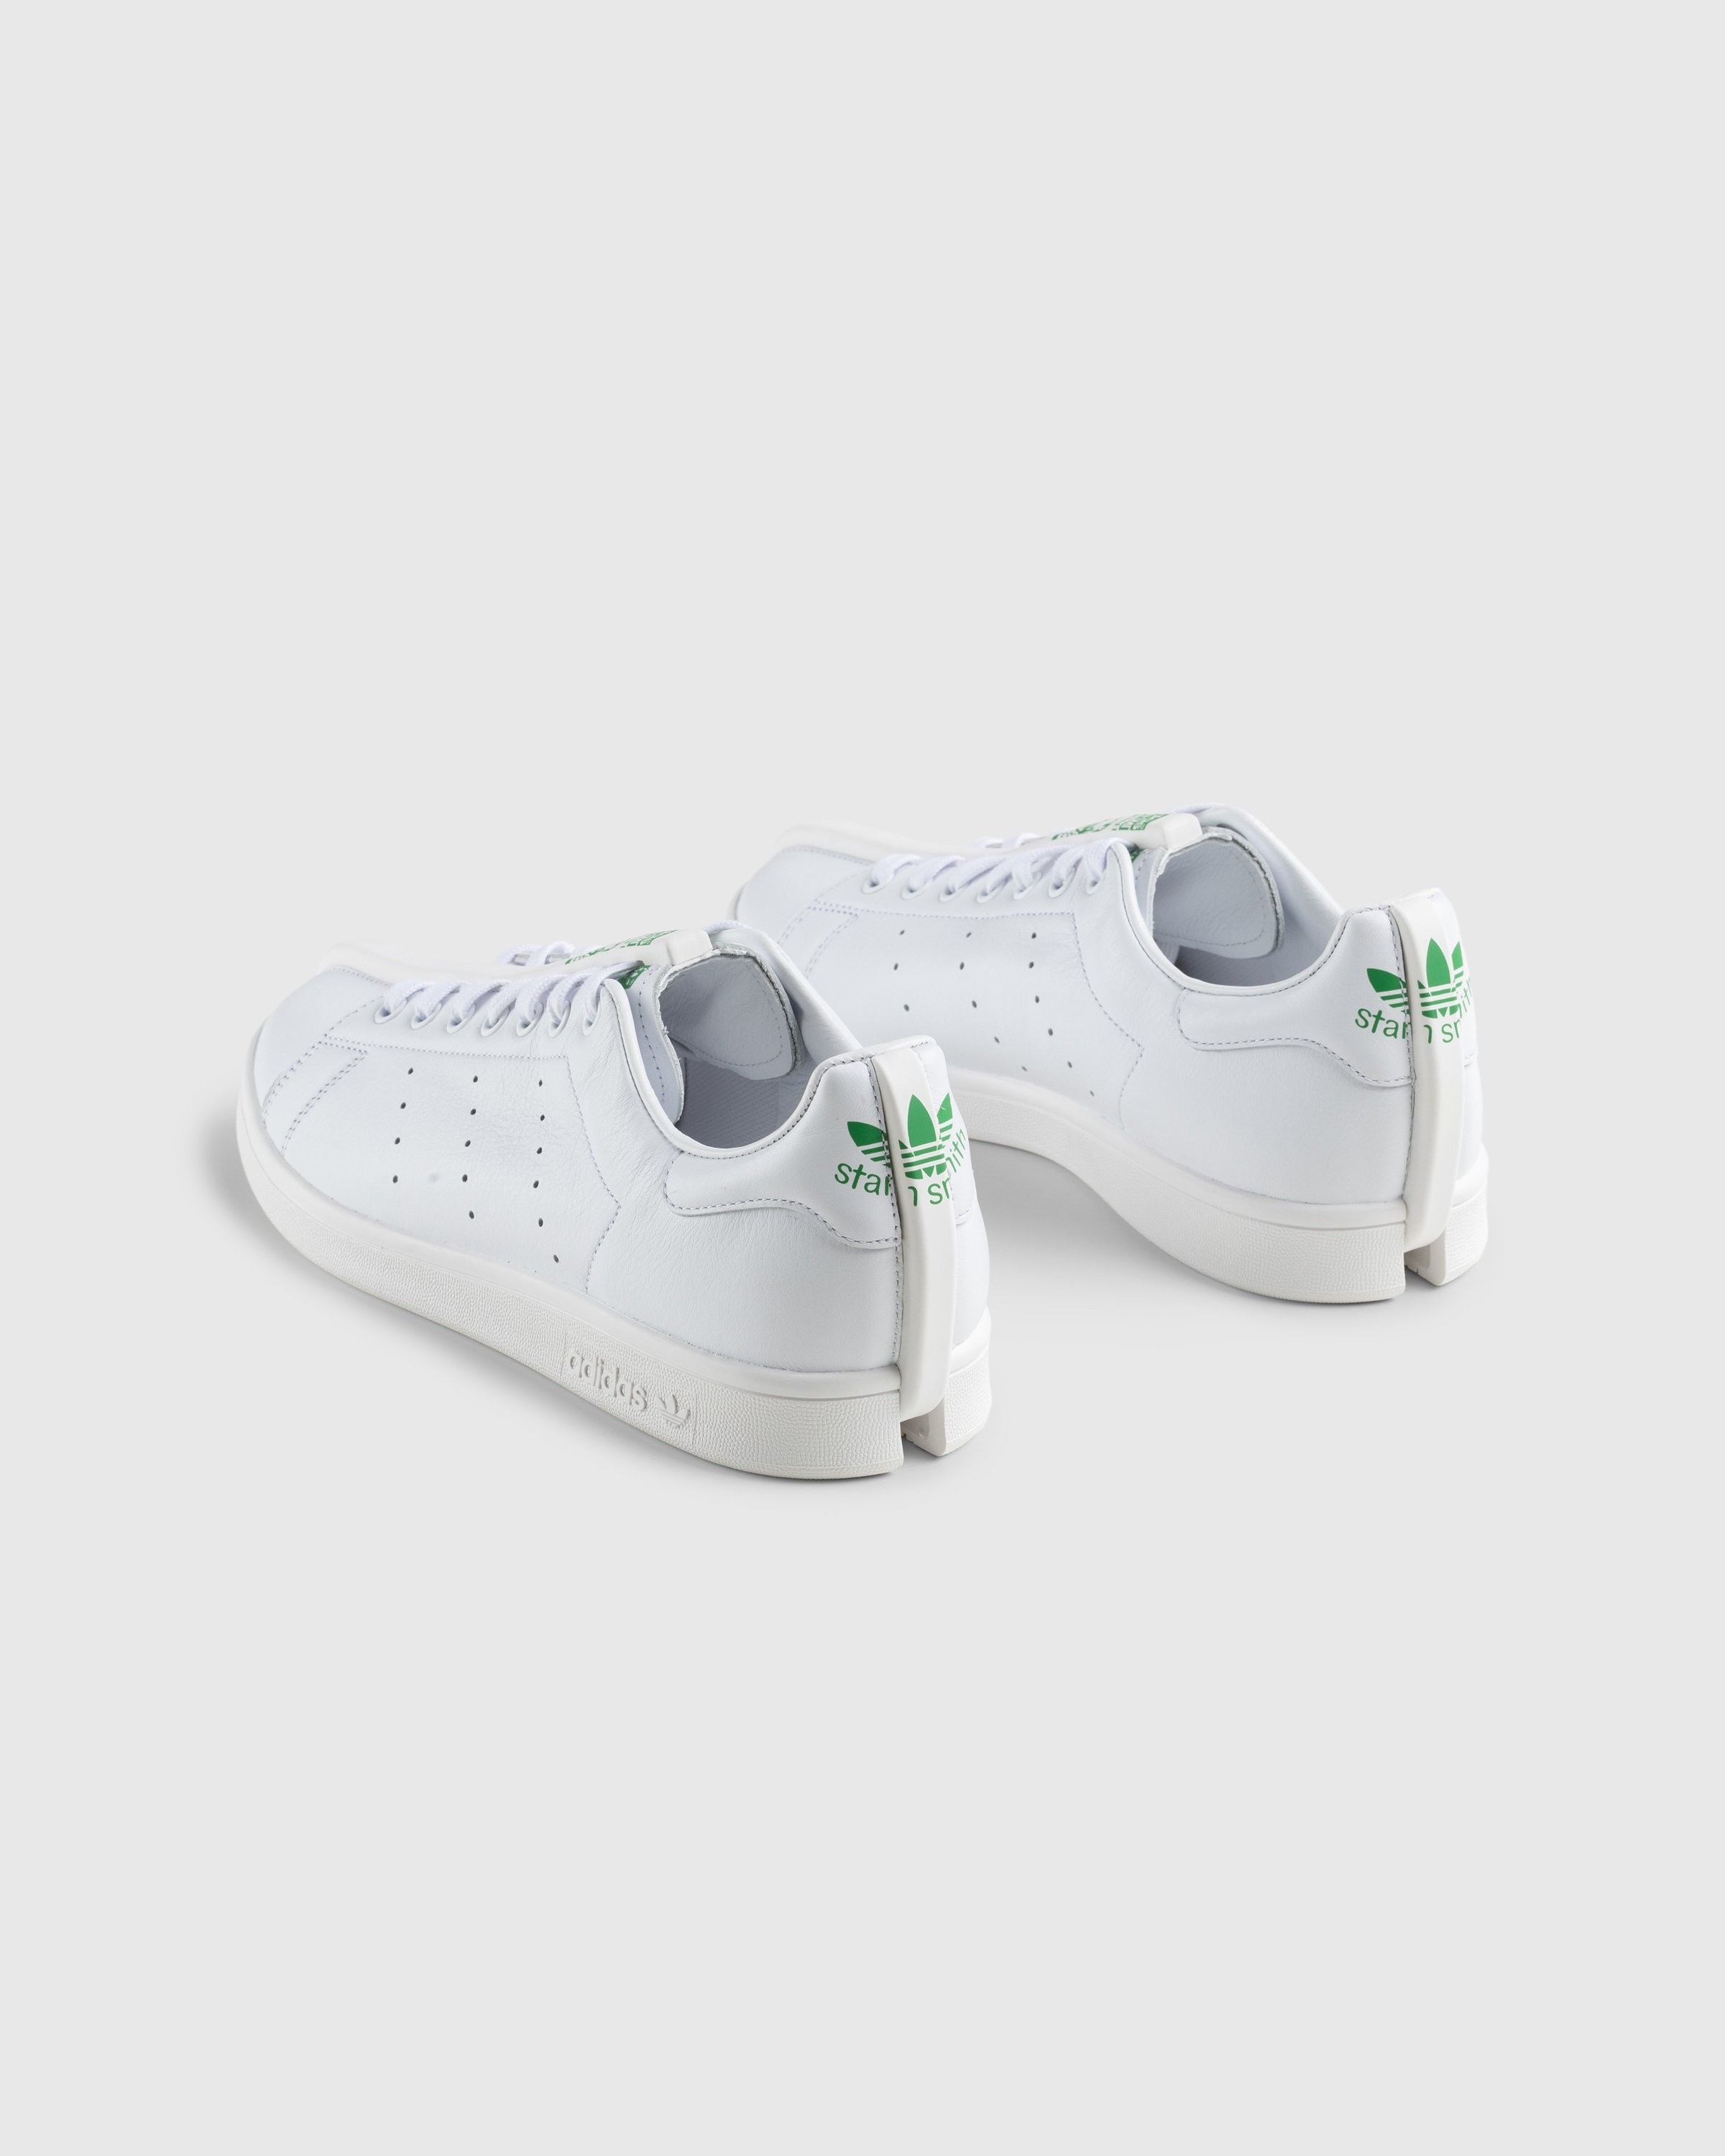 Craig Green x Adidas – CG Split Stan Smith White/Green - Sneakers - White - Image 4